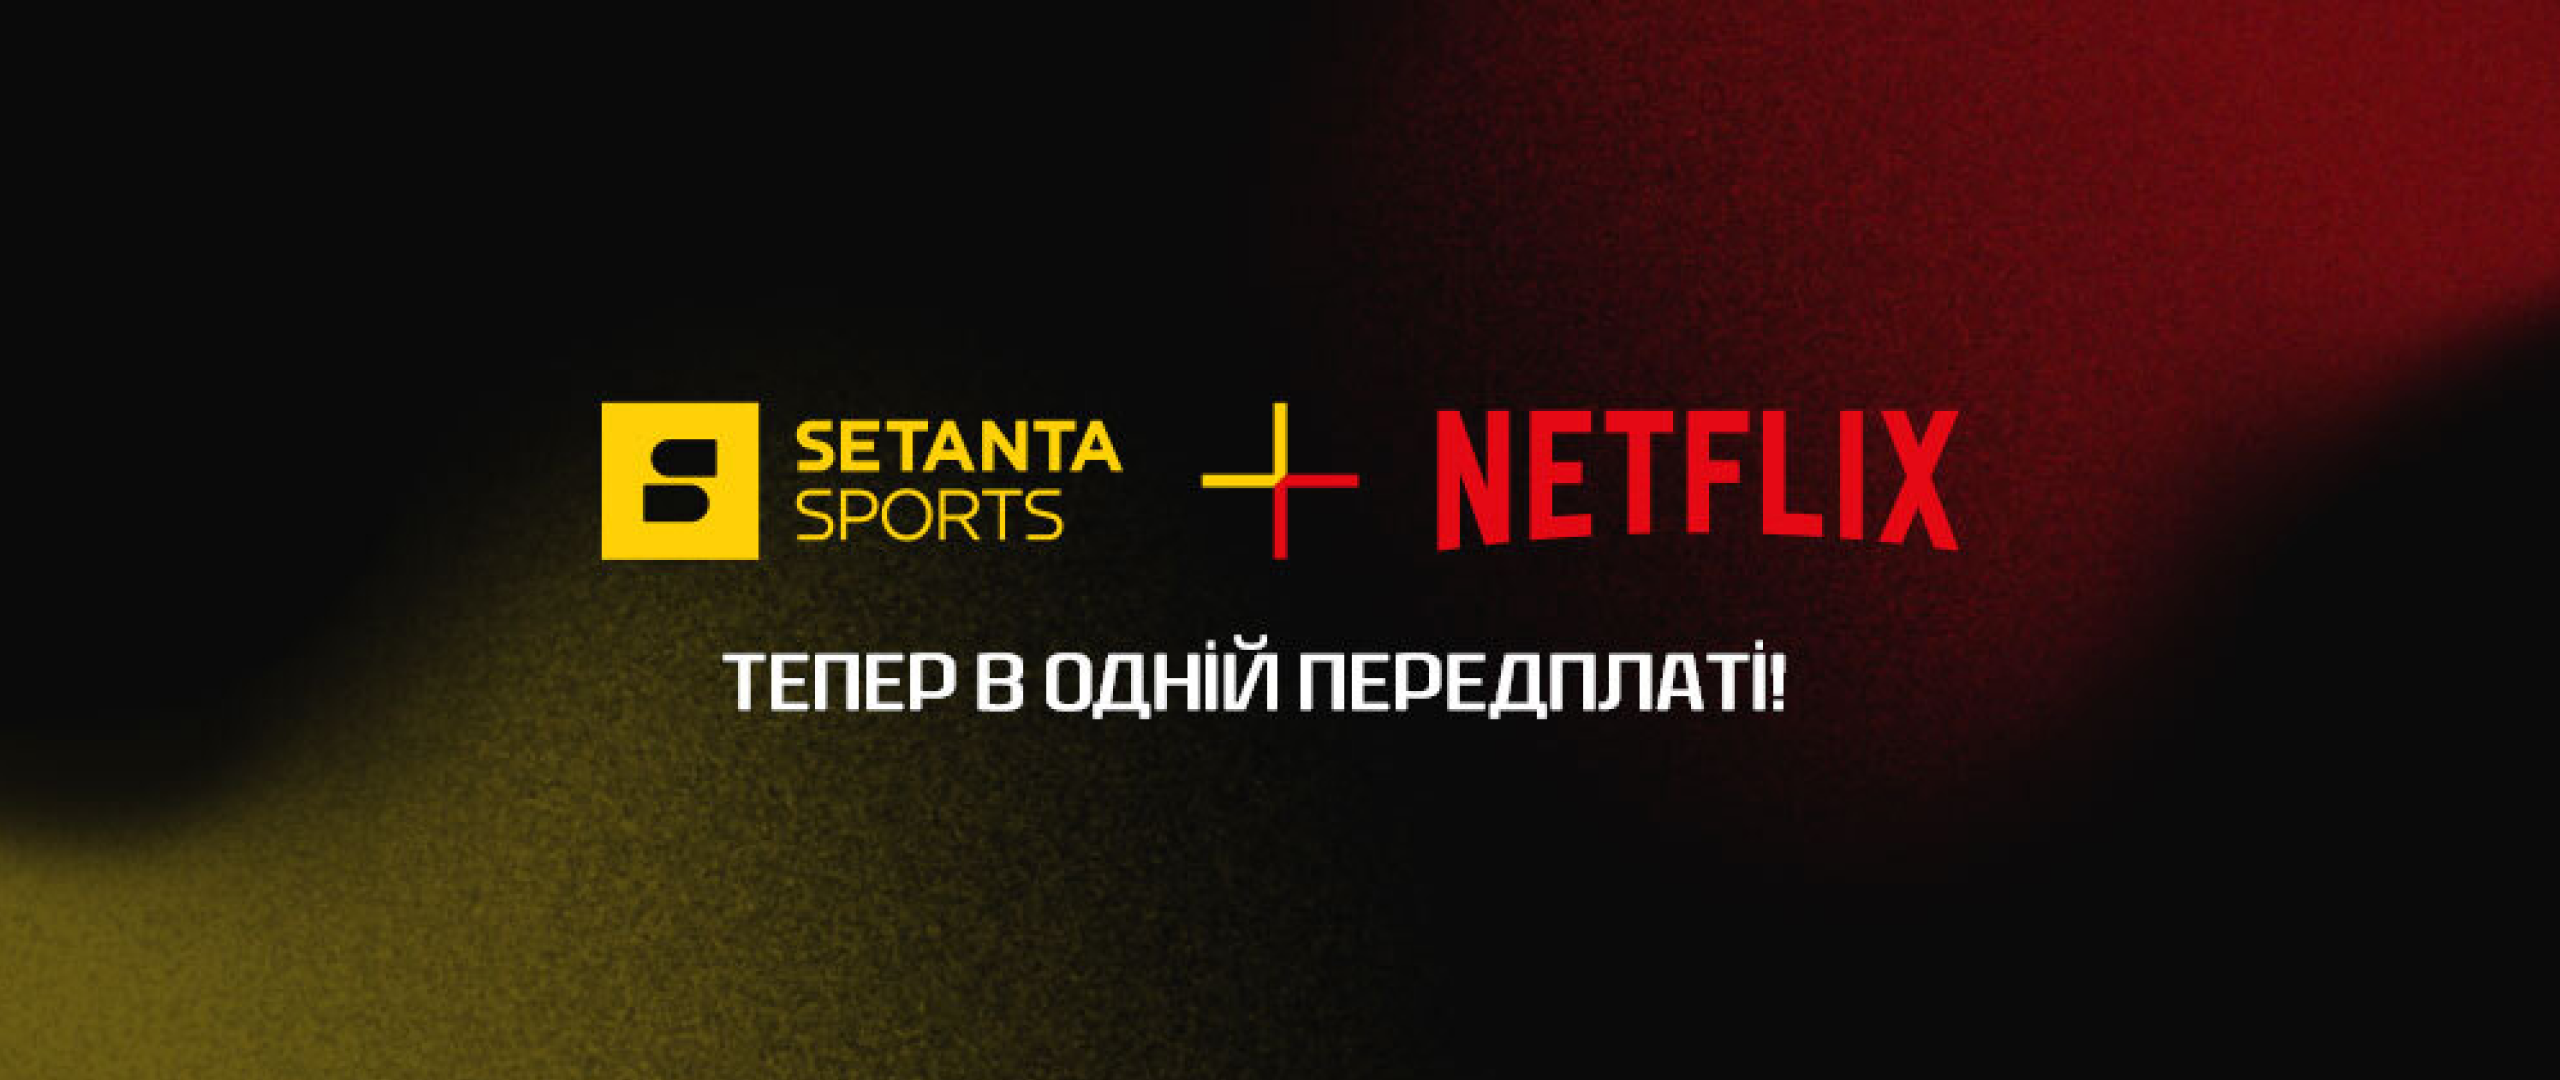 Setanta Sports объединилась с Netflix. Новая подписка открывает доступ к обеим платформам по единой плате